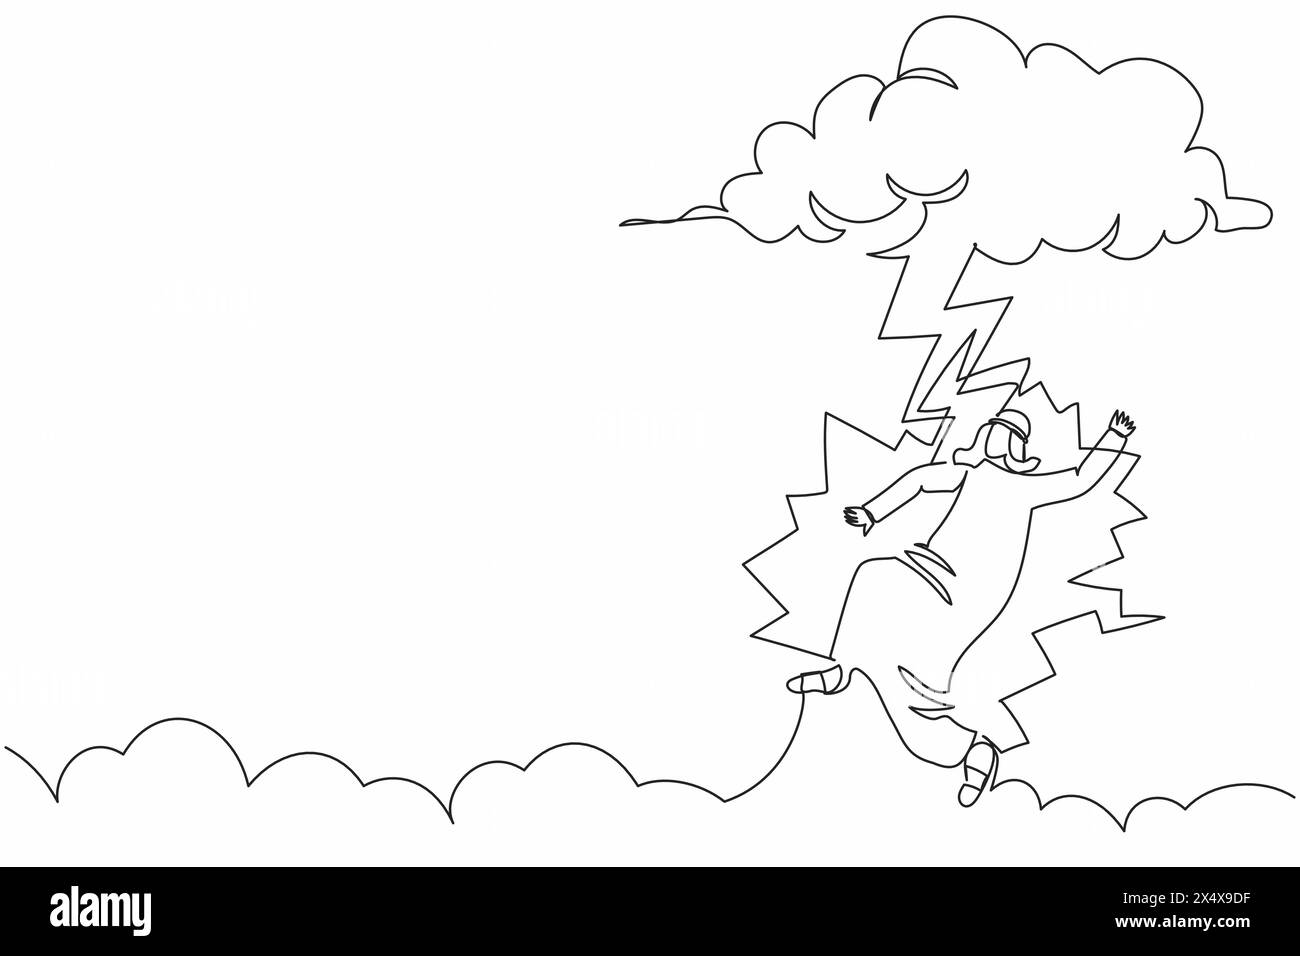 Ligne continue unique dessinant malchanceux homme d'affaires arabe frappé par la foudre ou le tonnerre d'un nuage sombre. Malchance, misère, désastre, risque, danger. O Illustration de Vecteur